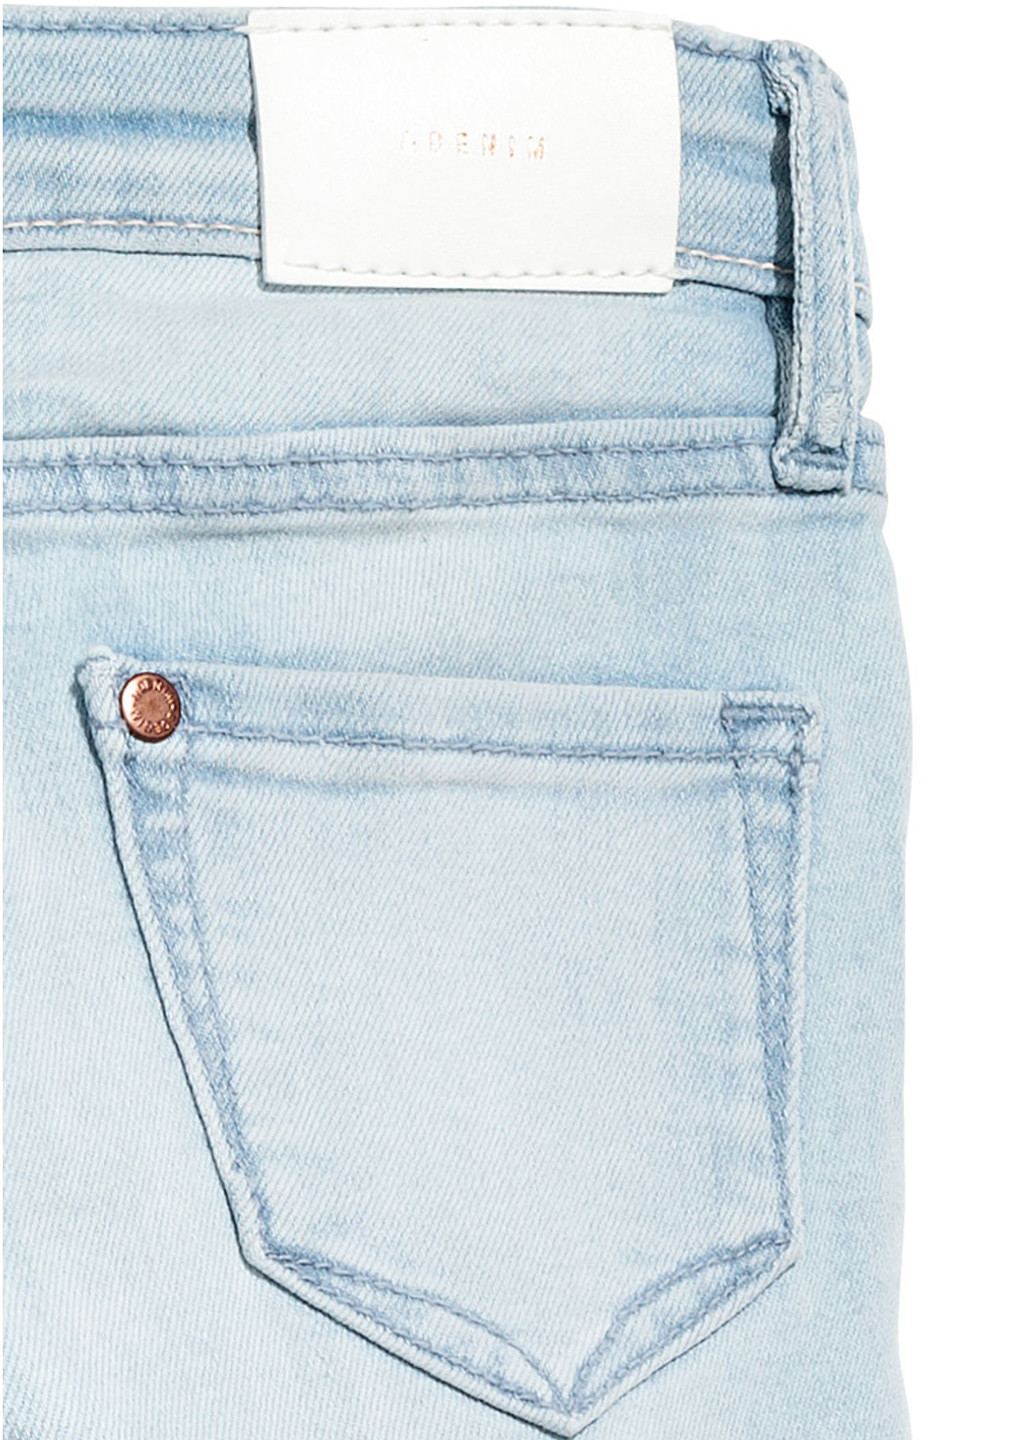 Светло-голубые демисезонные скинни джинсы H&M